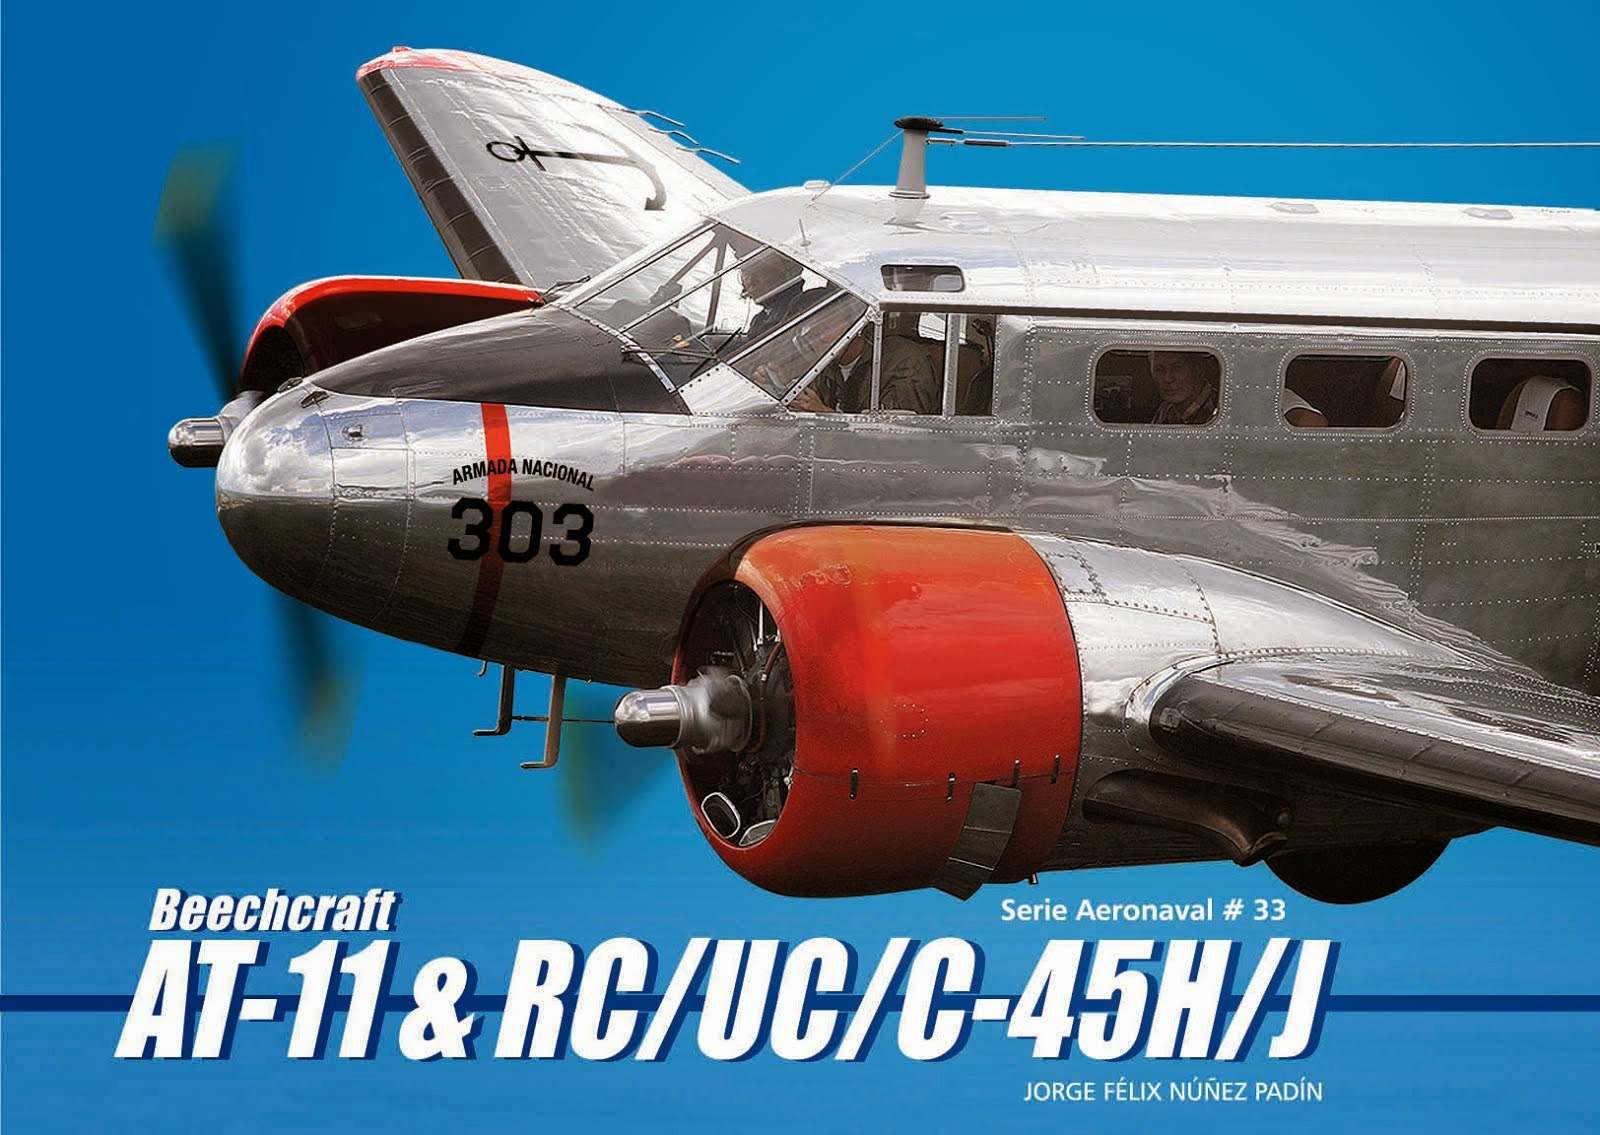 Serie Aeronaval N°33 - Beechcraft AT-11 & RC/UC/C-45H/J (Ing. Jorge Nuñez Padín)